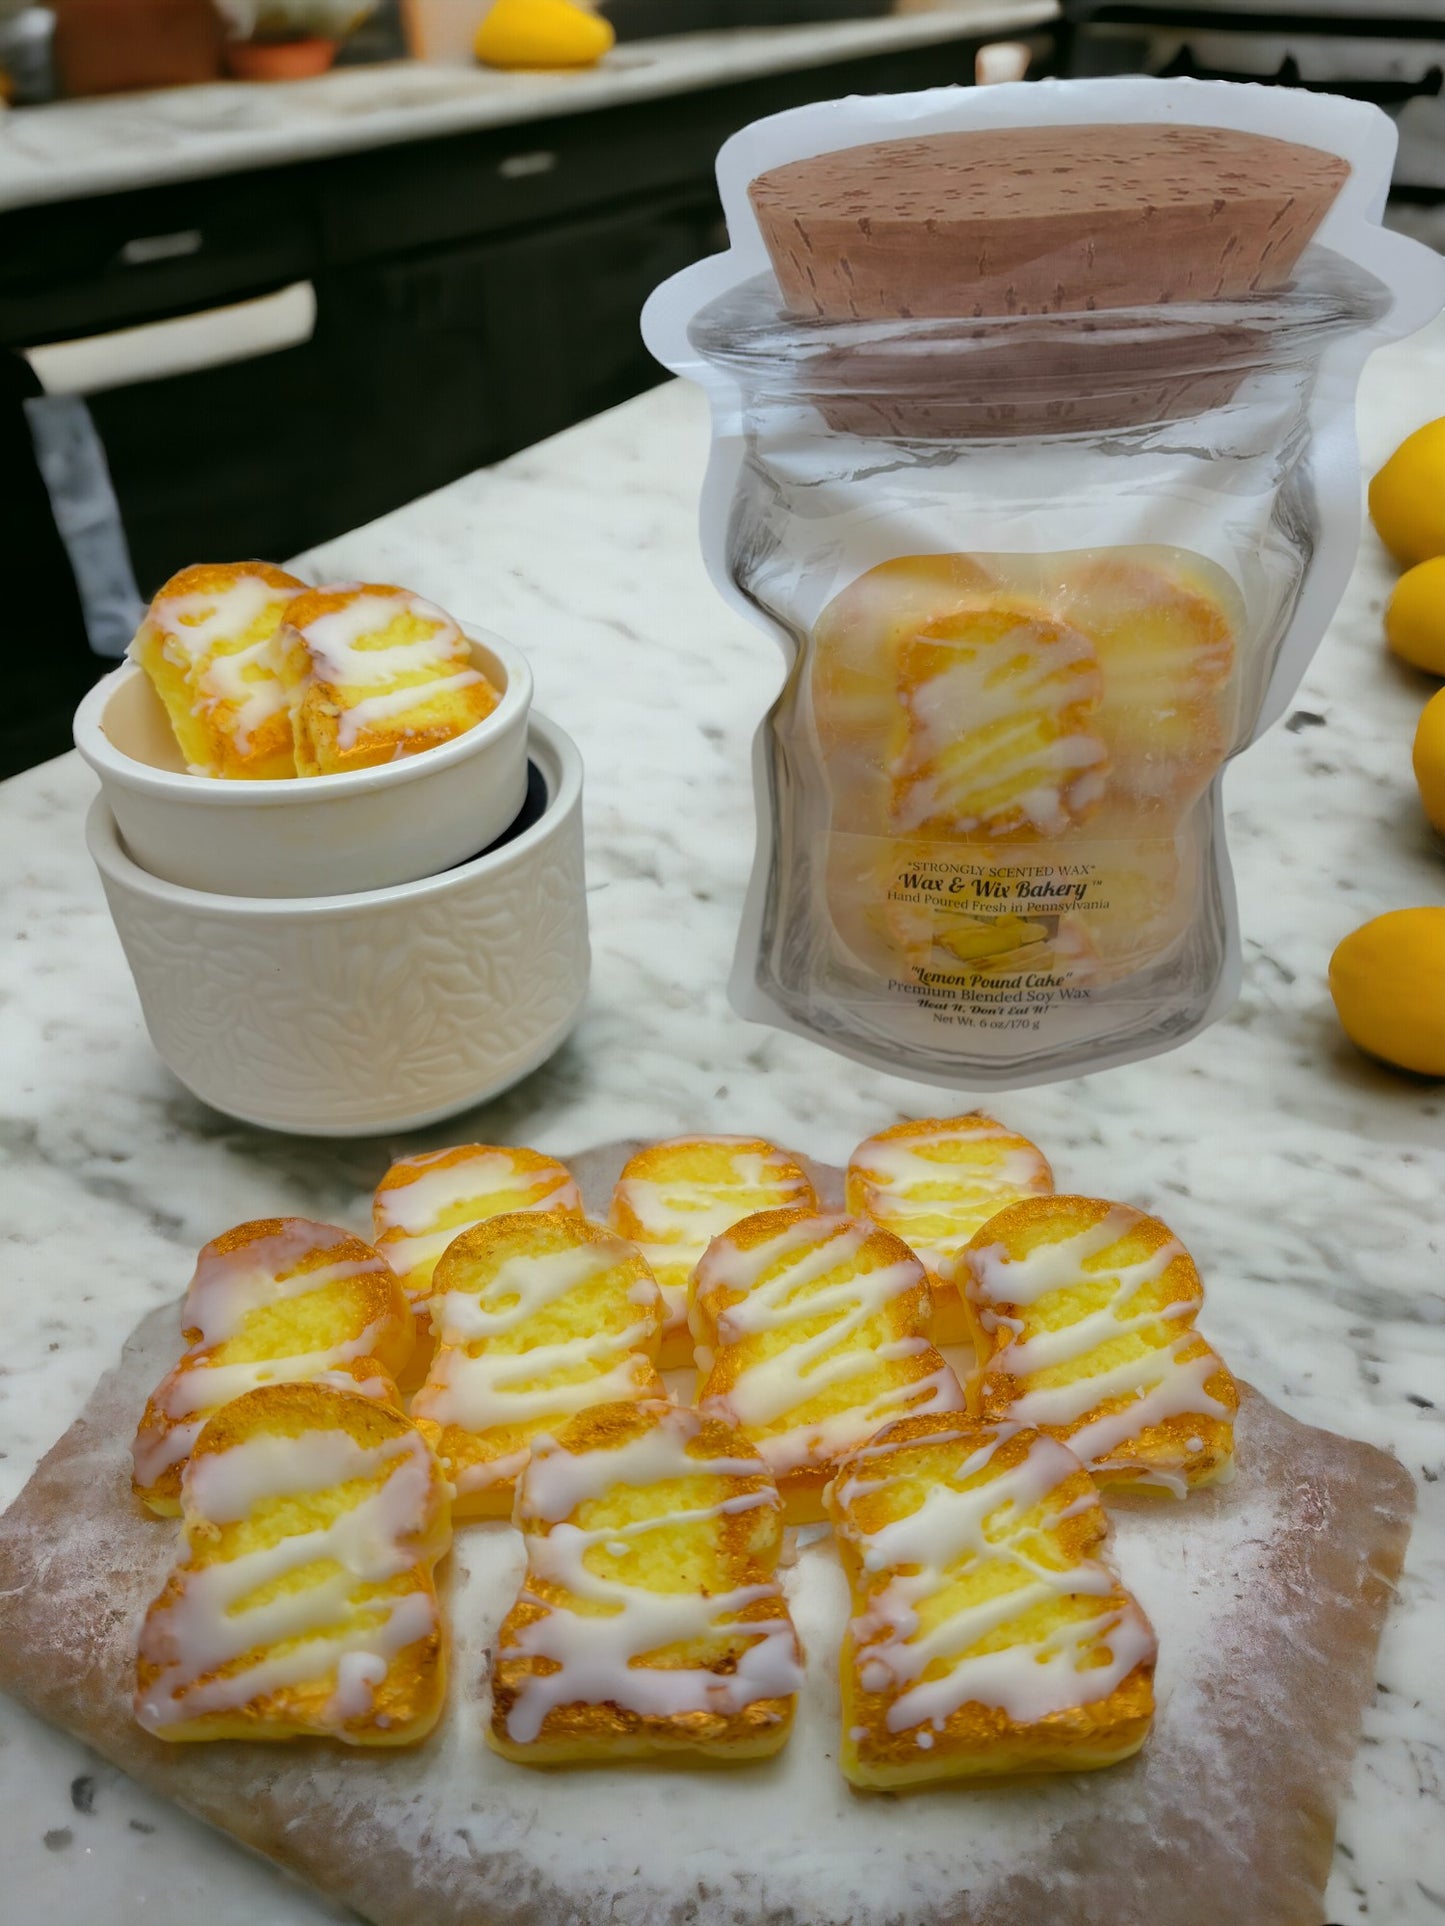 Glazed Lemon Pound Cake Wax Melts. 6 oz. Bread Wax Melts/Soy Wax Melts/Strongly Scented Wax Melts/10 Pieces